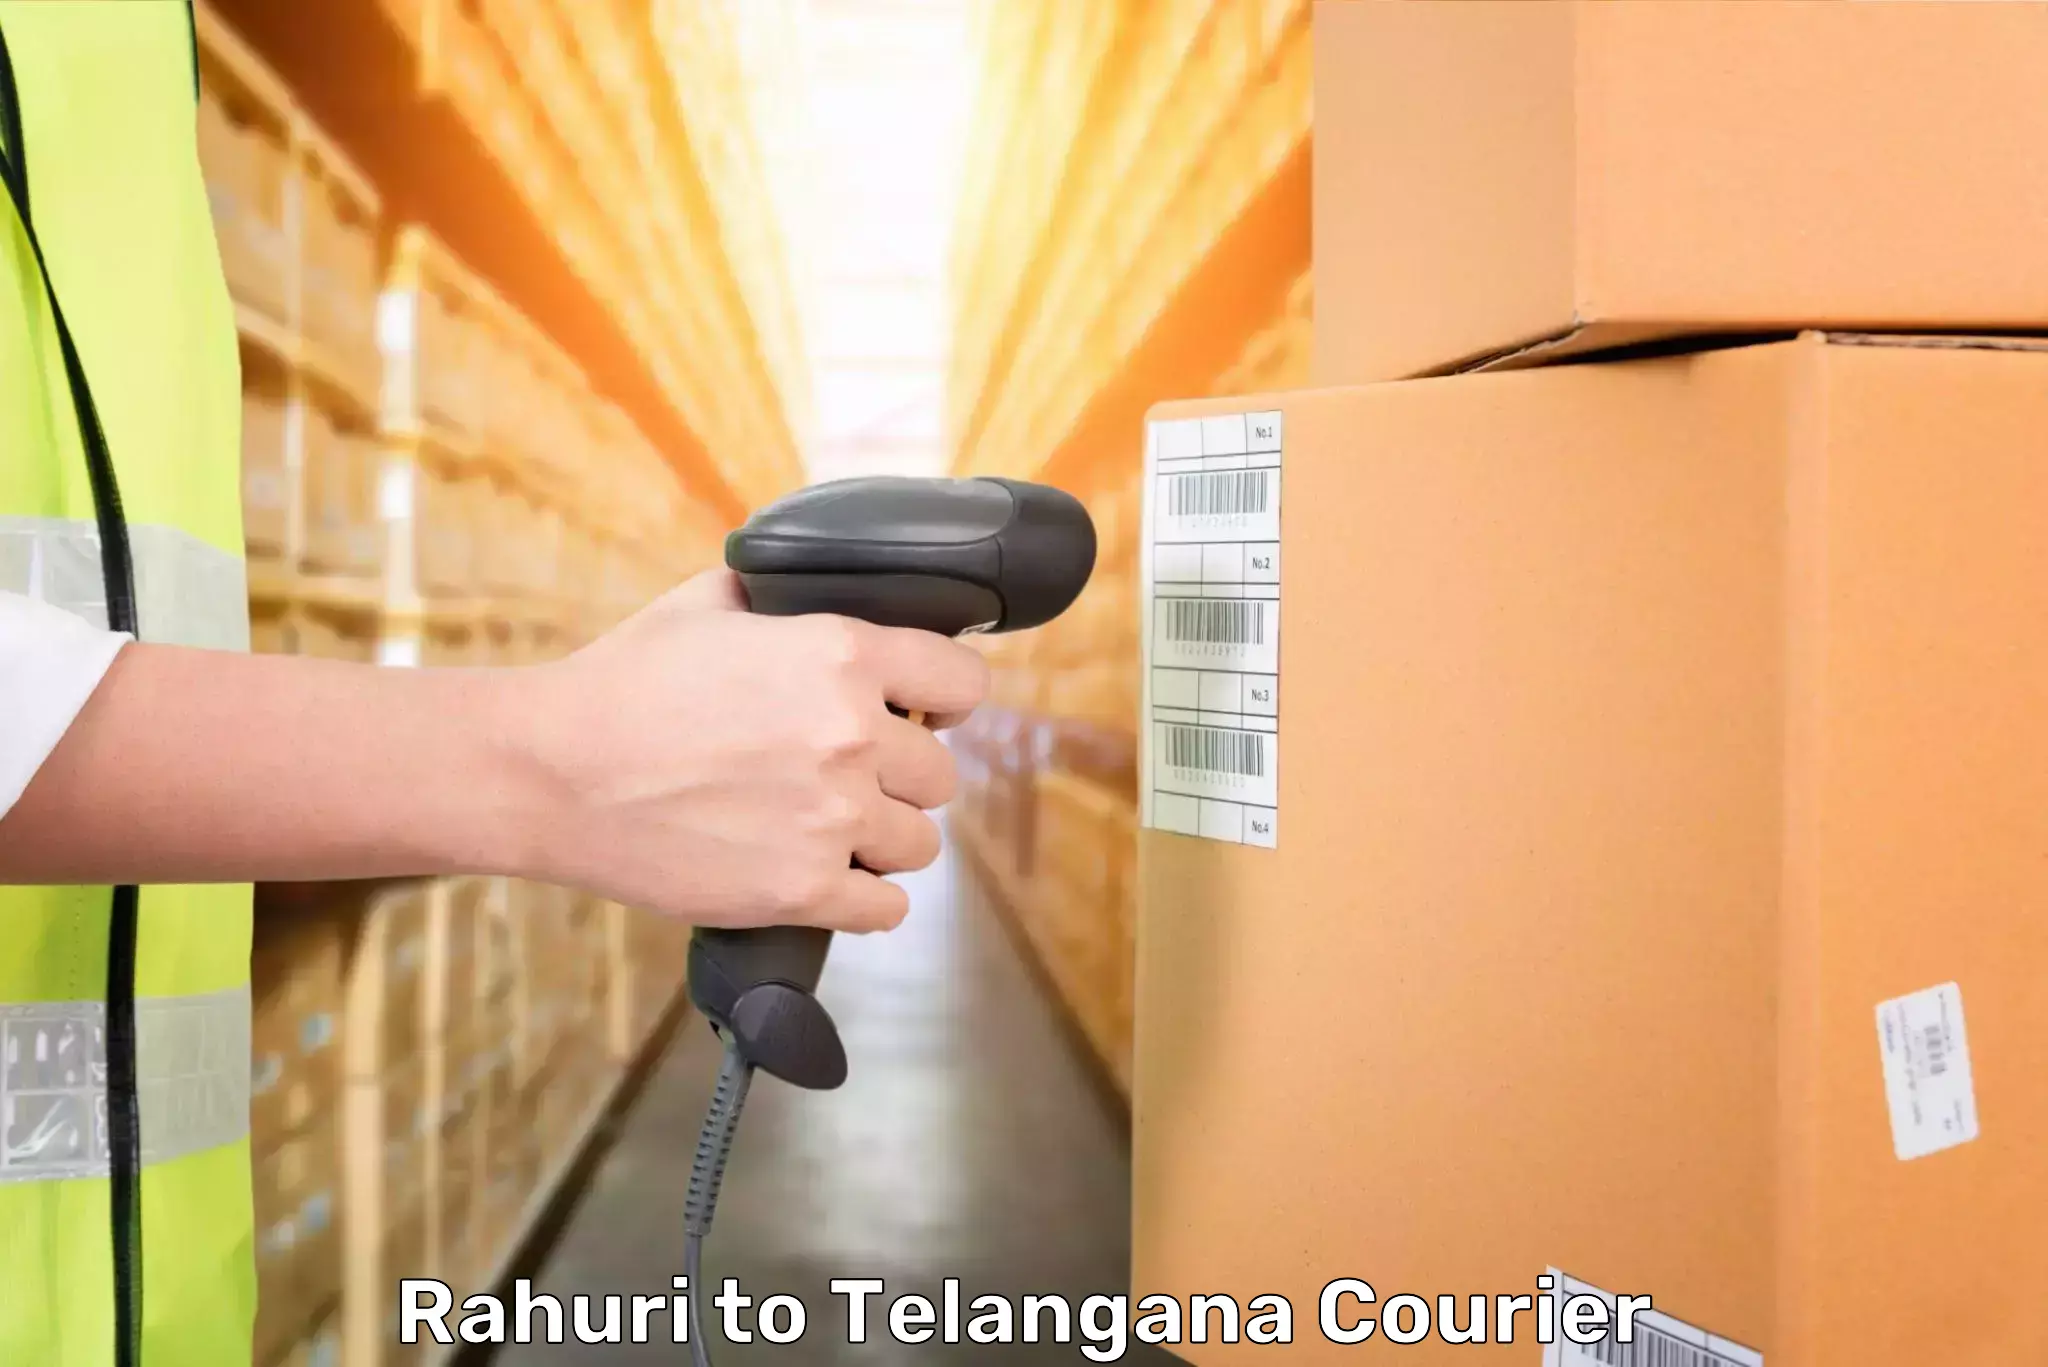 Door-to-door baggage service Rahuri to Bejjanki